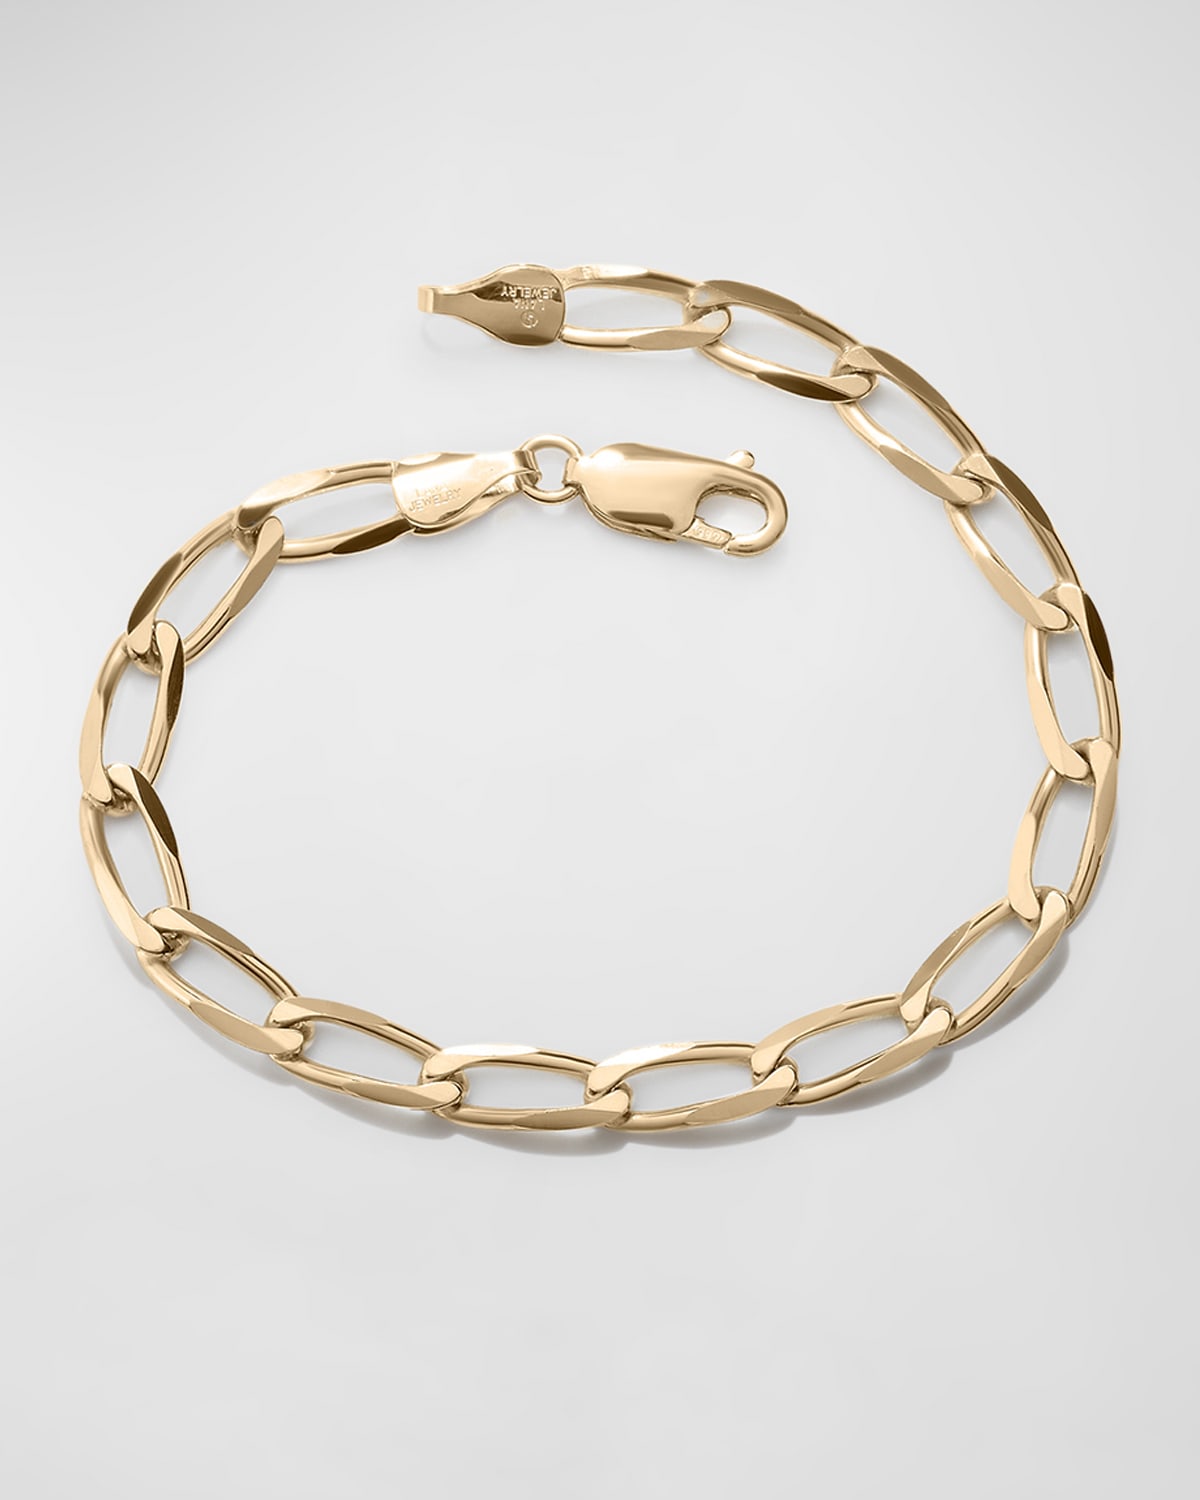 Lana 14k Yellow Gold Biography Chain-link Bracelet